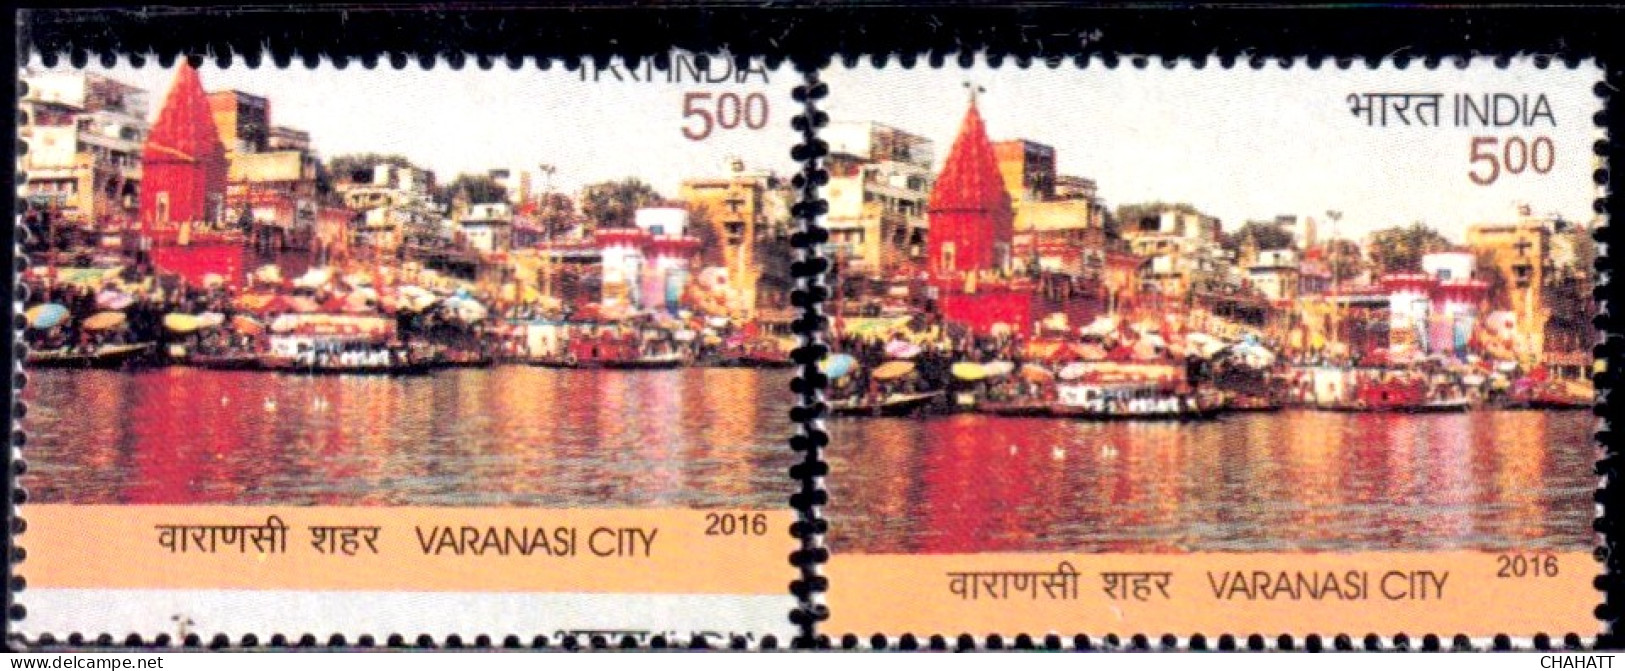 BENARAS CITY (VARANASI) - BANKS OF RIVER GANGES- WATER- TEMPLES- MASSIVE ERROR - INDIA-2016-MNH-IE-92 - Varietà & Curiosità